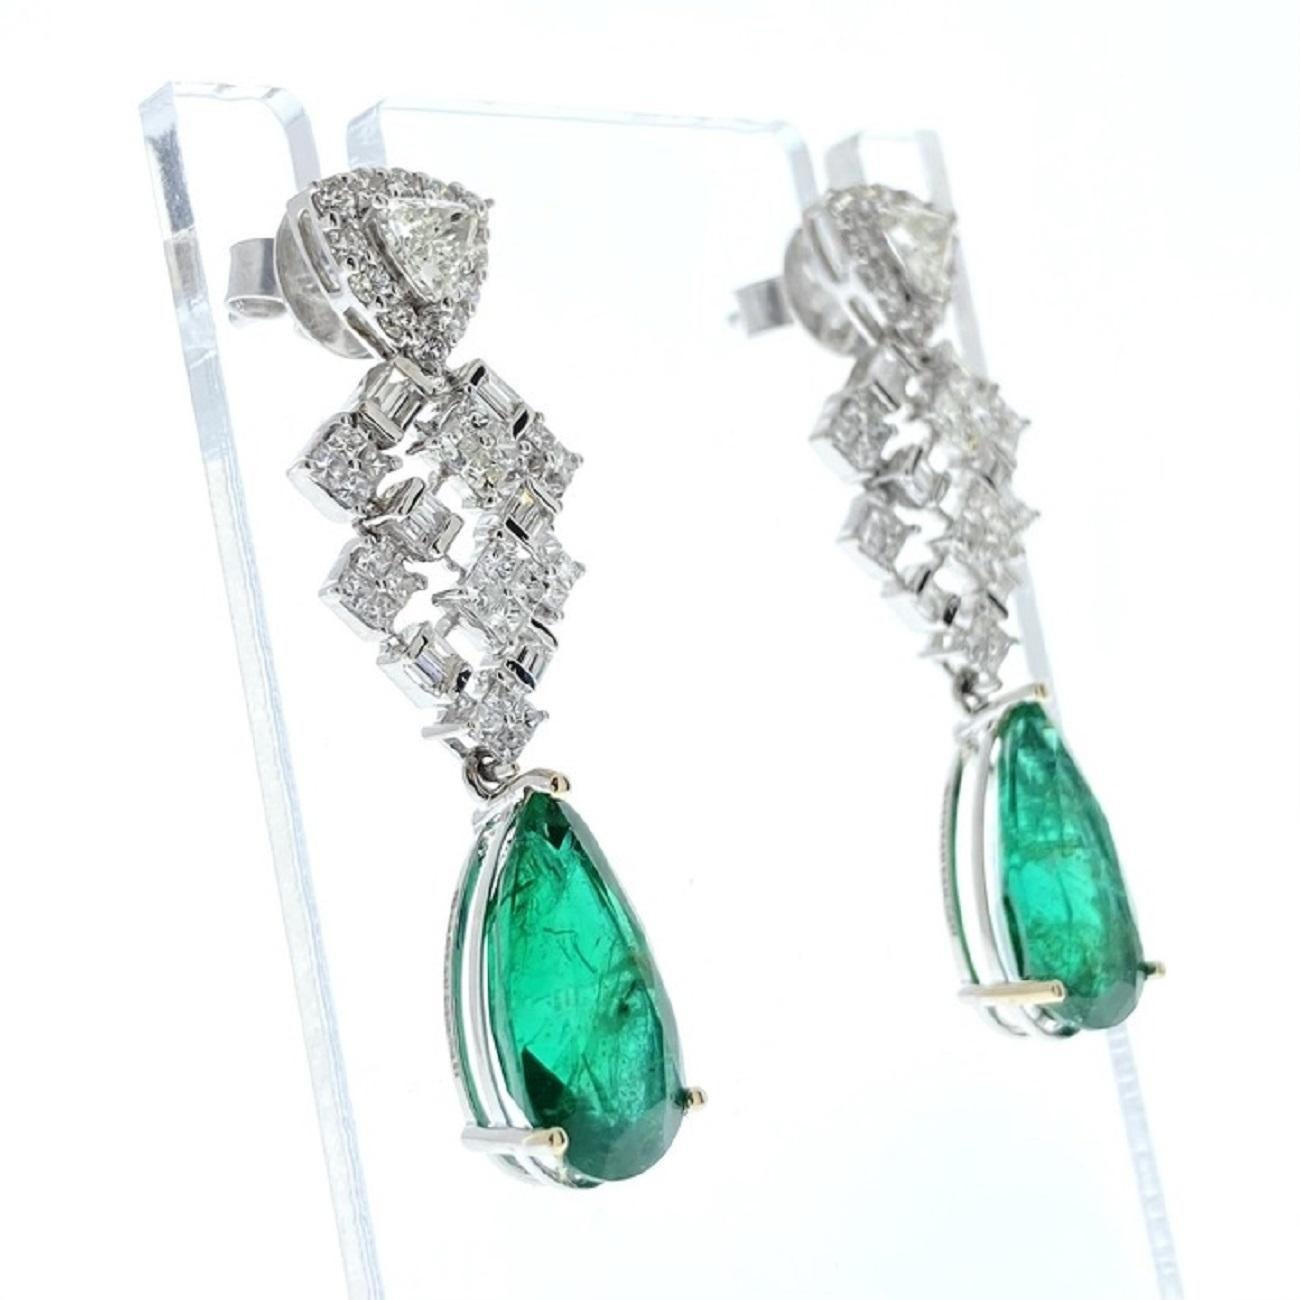 Ein Paar modische Ohrringe mit einem birnenförmigen Smaragd als Hauptstein, mit einem Gewicht von 8,24 Karat. Der Smaragd weist eine grüne Farbe auf, ein charakteristisches und sehr begehrtes Merkmal von Smaragden. Die Fassung dieser Ohrringe